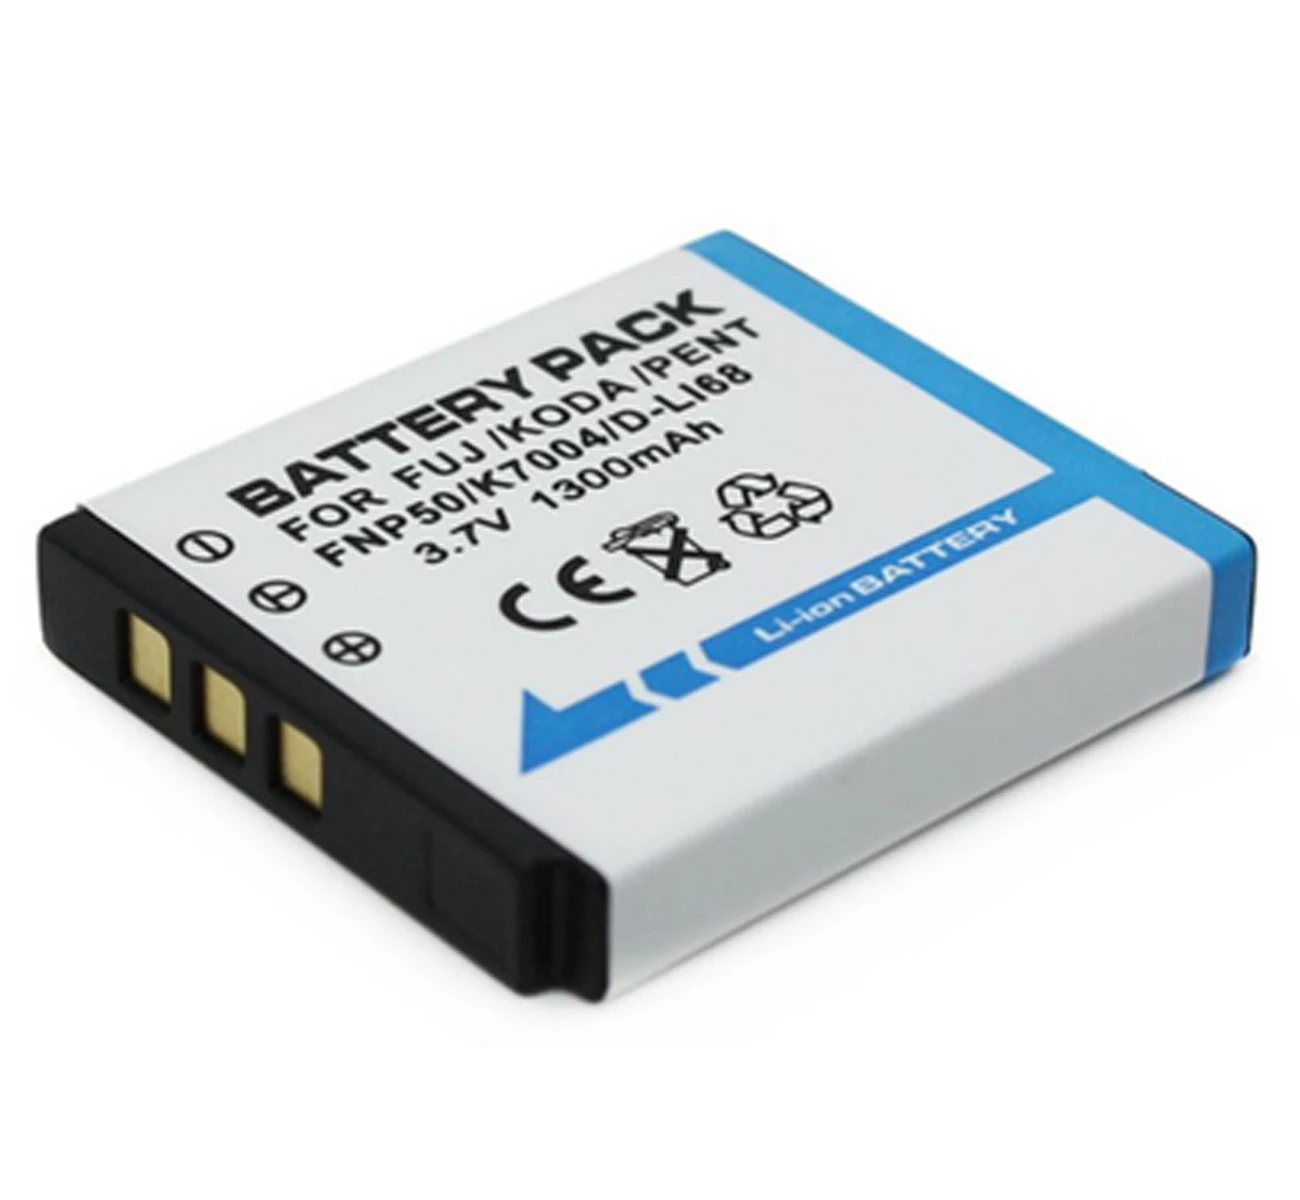 Battery Pack | Digital Batteries - Battery Pack Np-50 Np50 Np-50a Np50a  Klic-7004 - Aliexpress